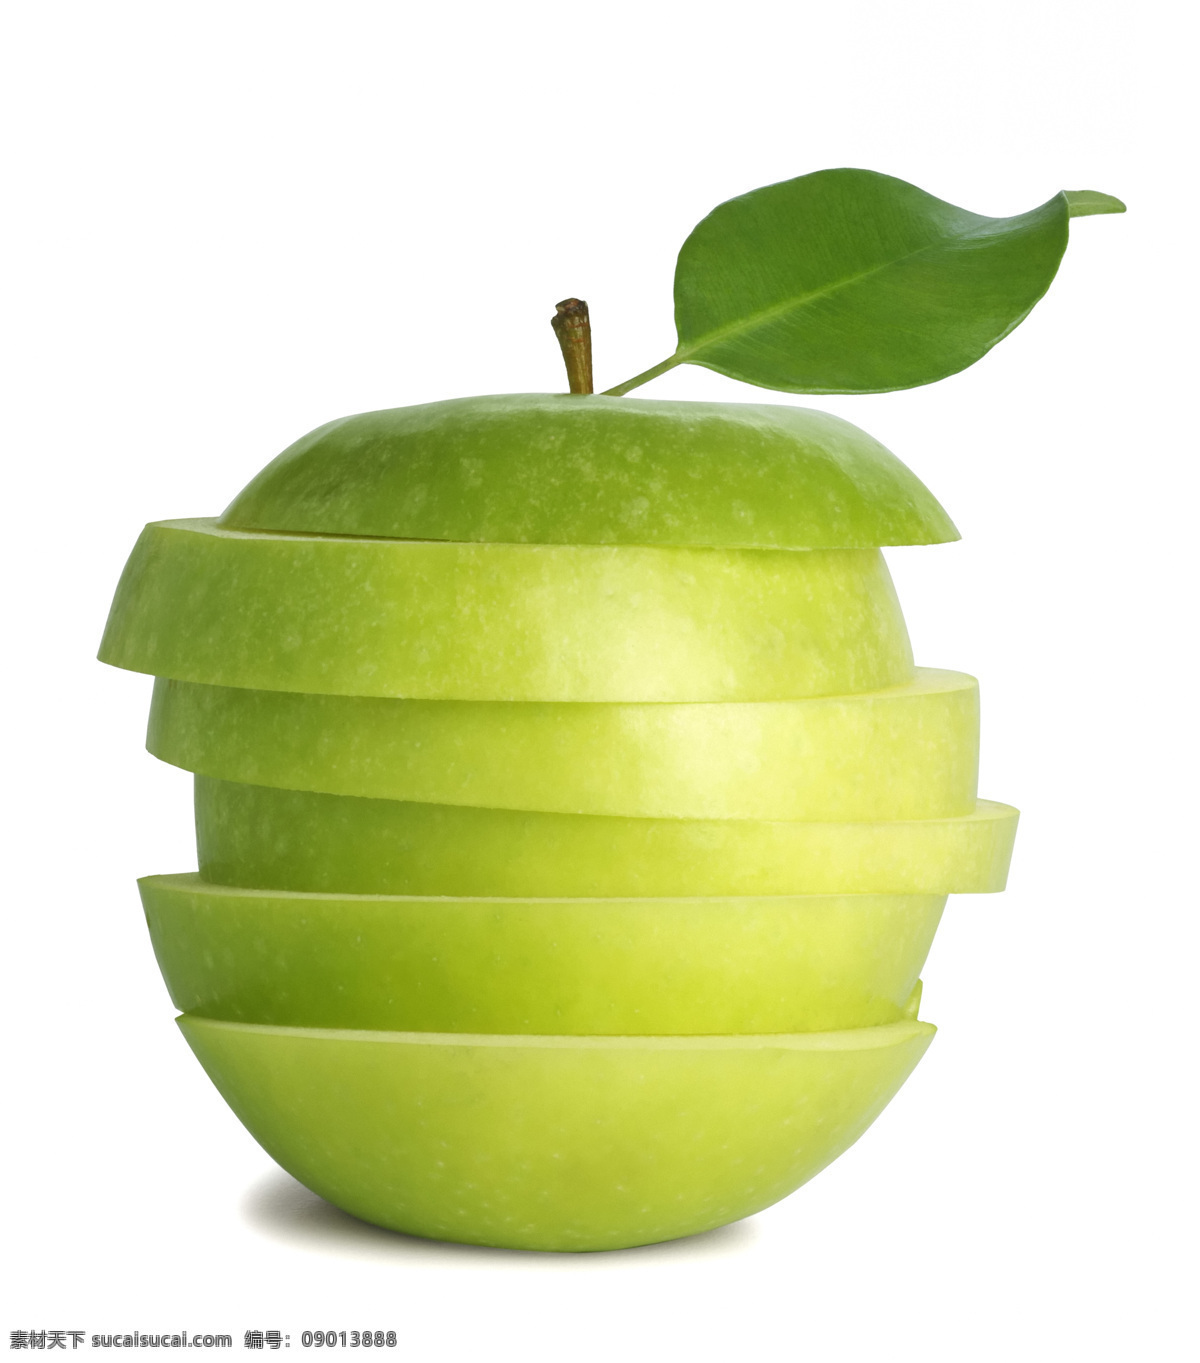 切开 错位 青苹果 高清素材 设计素材 水果类素材 切开的青苹果 错位的青苹果 生物世界